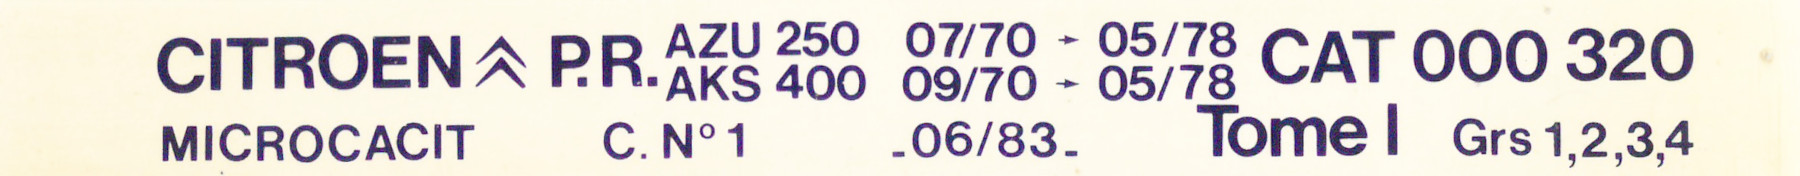 CAT000320 Catalogue pièces rechange Citroën AZU250 AKS400 07/70►05/78 06/83